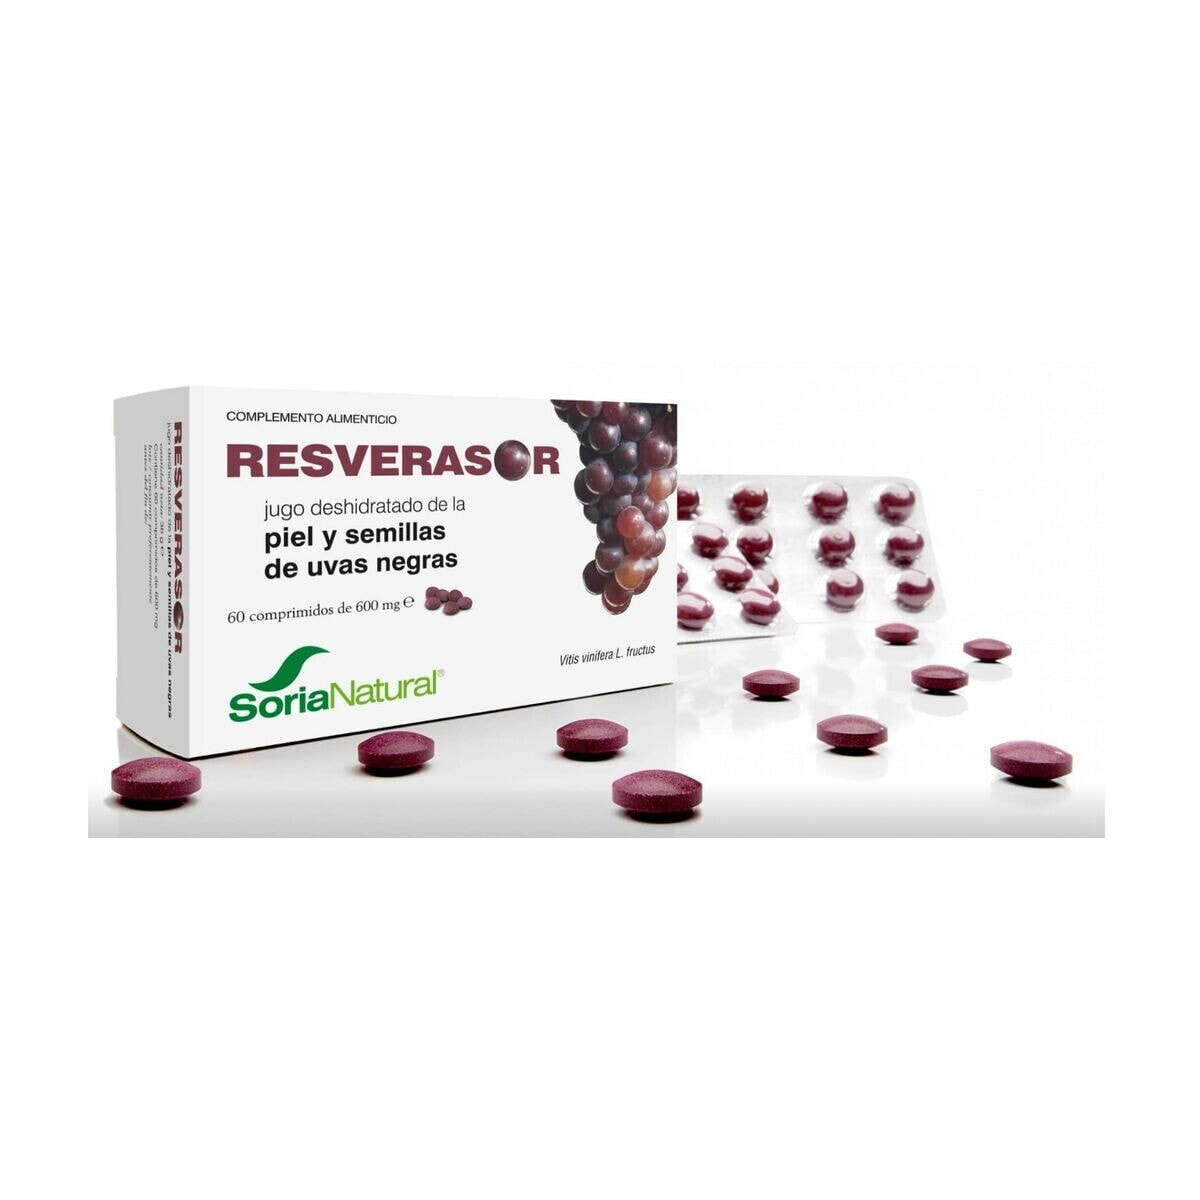 Food Supplement Soria Natural Resverasor 600 mg 60 Units